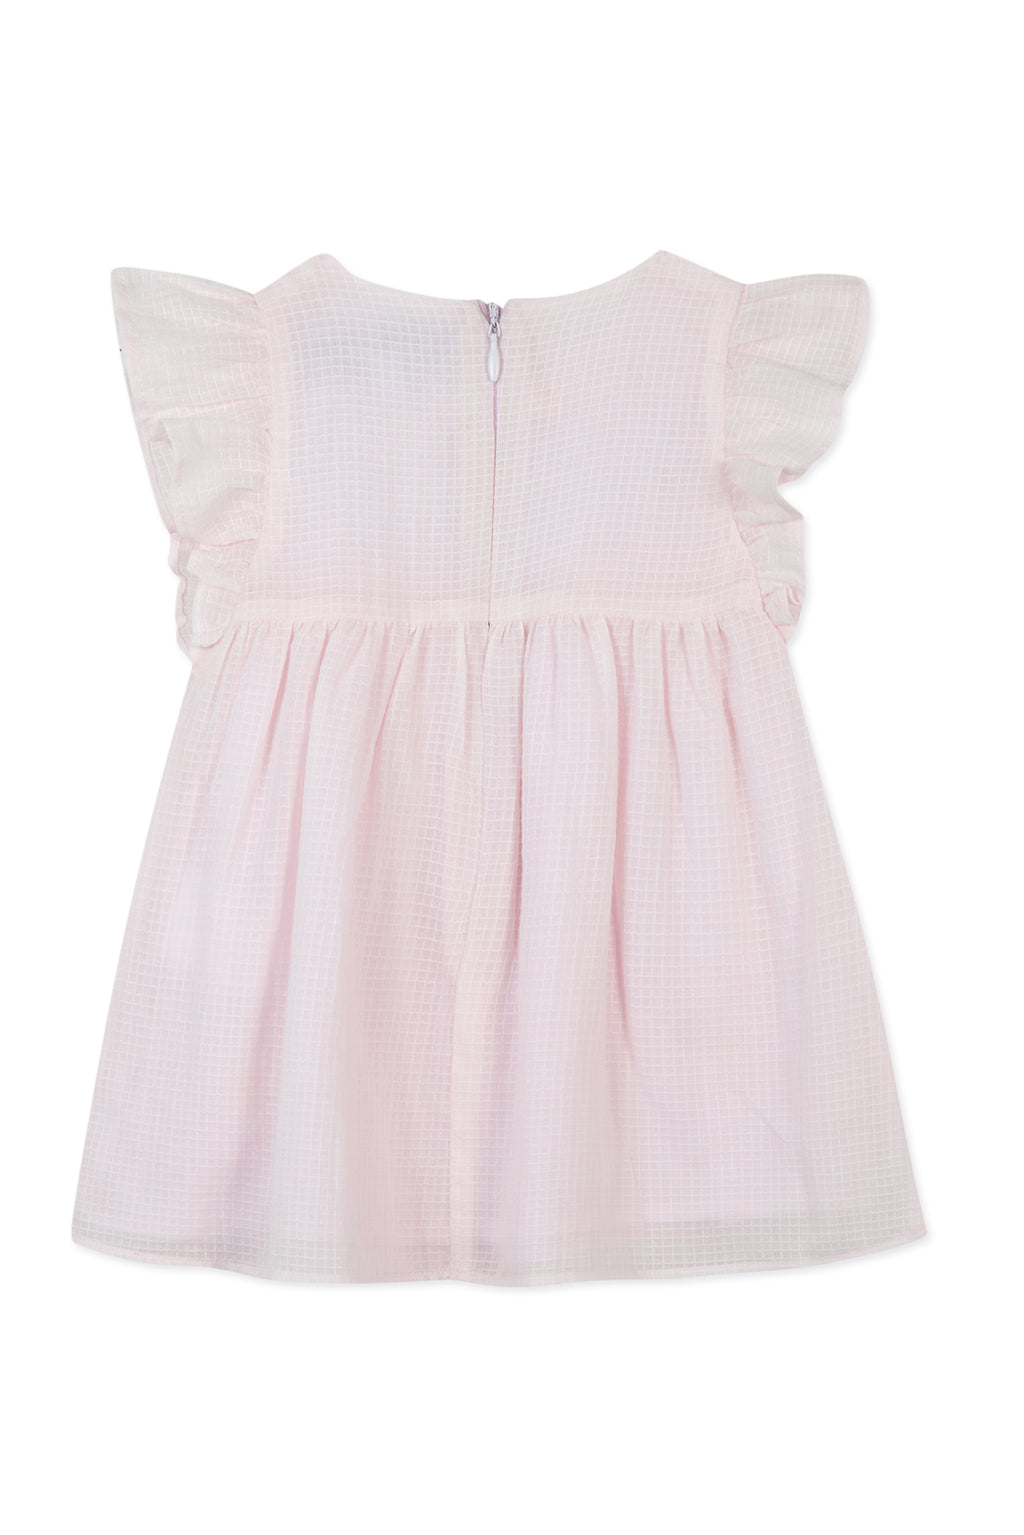 Dress - Pale pink cotton sail